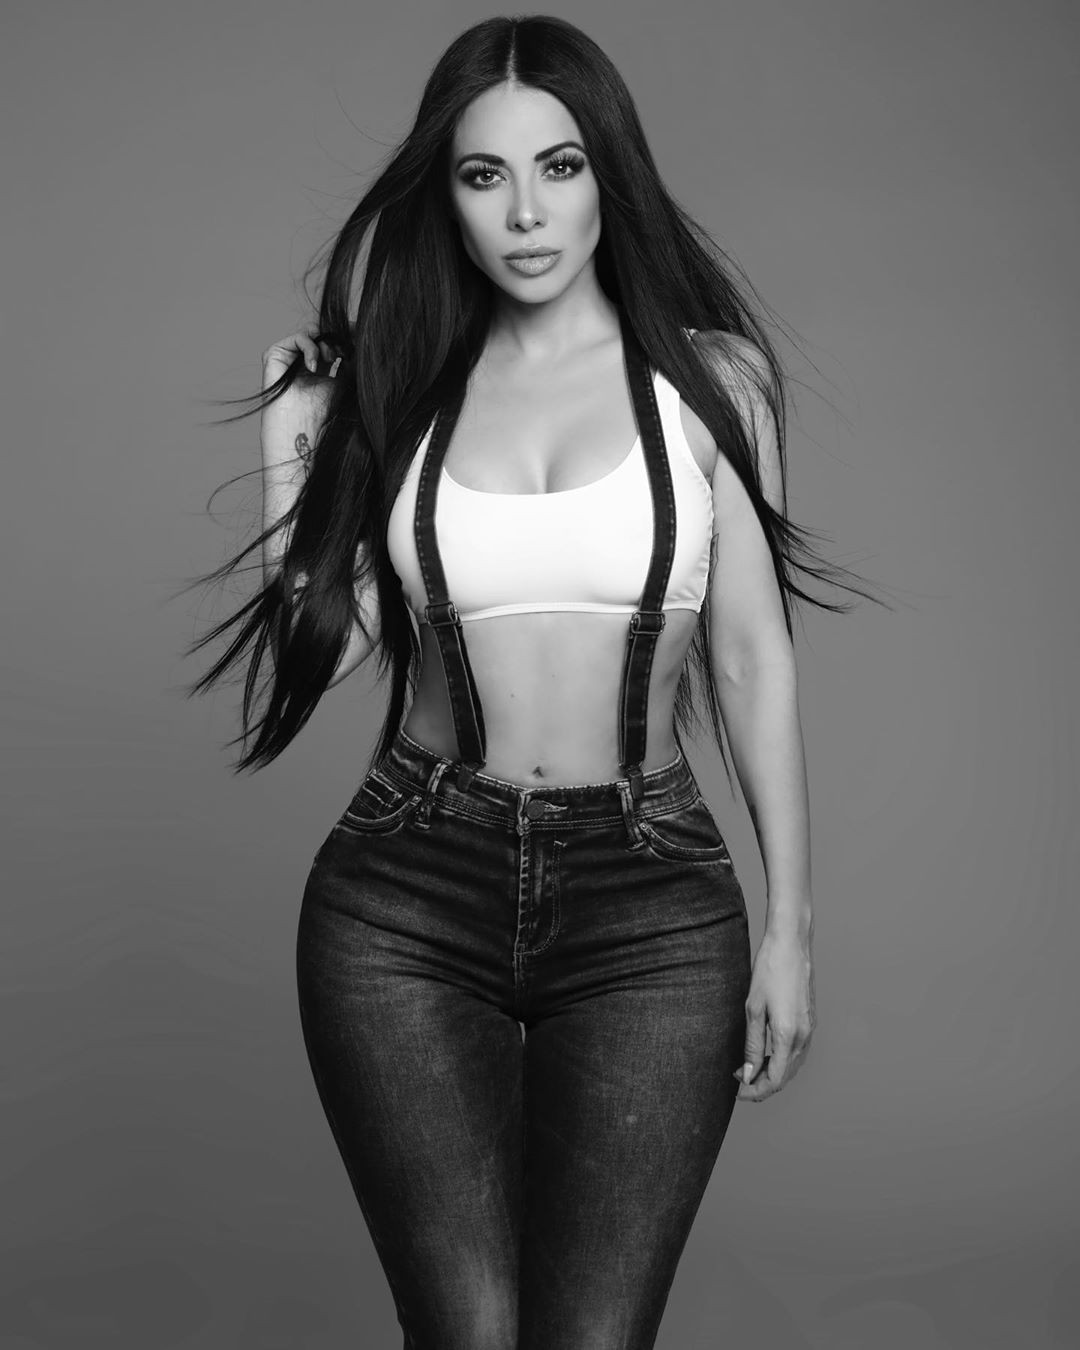 Impresionante elección para Jimena Sanchez, Skin Tight: kim kardashian,  Presentador de televisión,  parís hilton,  Modelos calientes de Instagram  